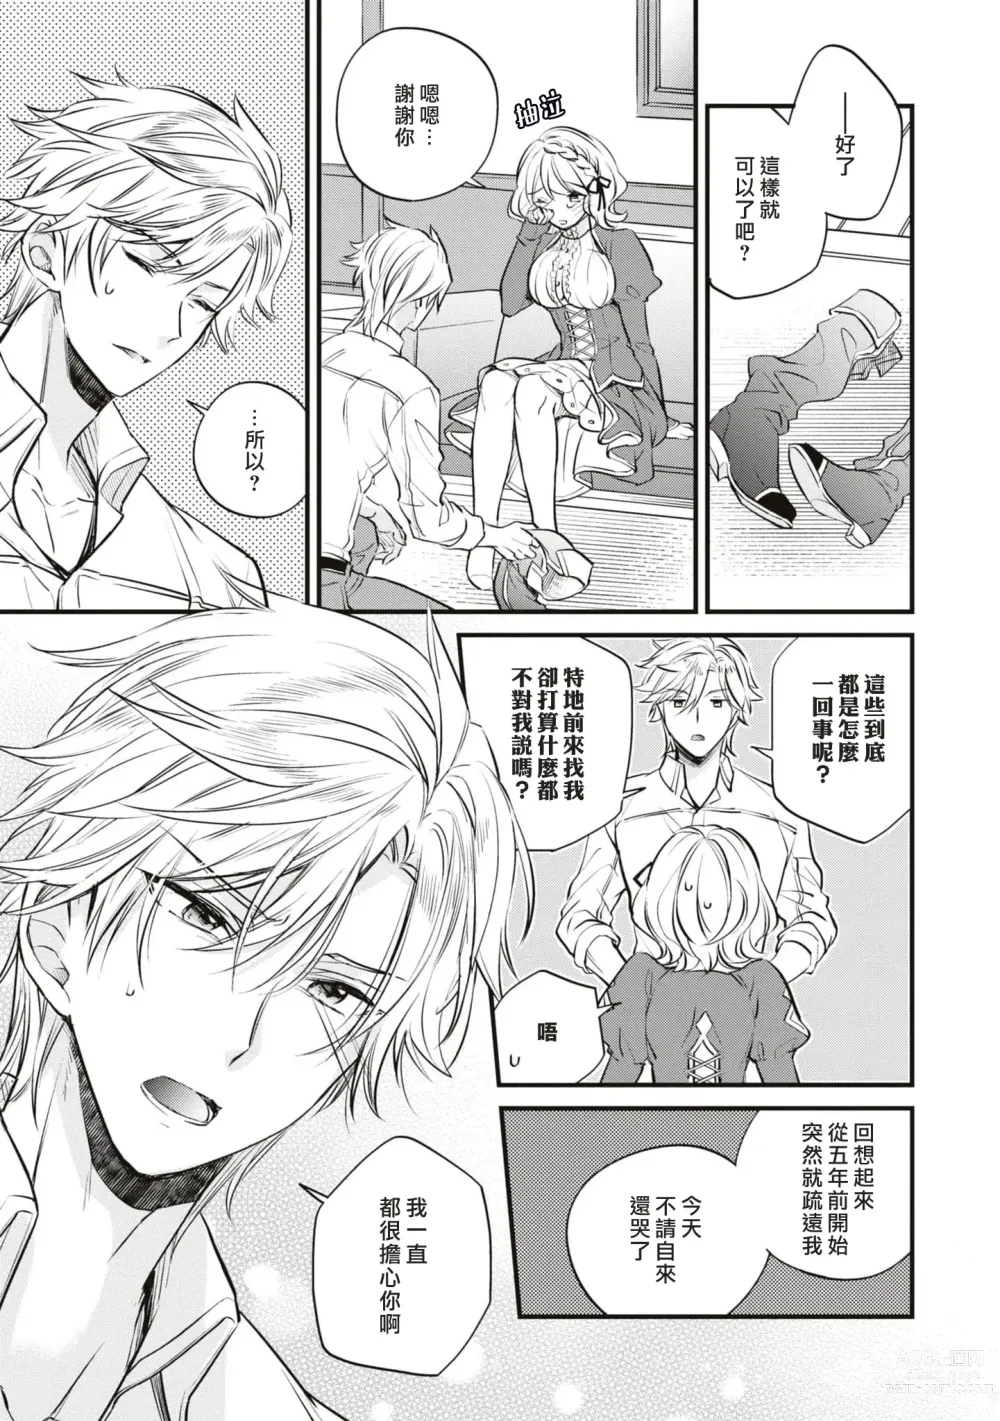 Page 14 of manga 不经意间帮助过的魔女向我报恩，所以被下了会自动朝喜欢的人走去，并会在碰触他时被施予淫纹的魔法。